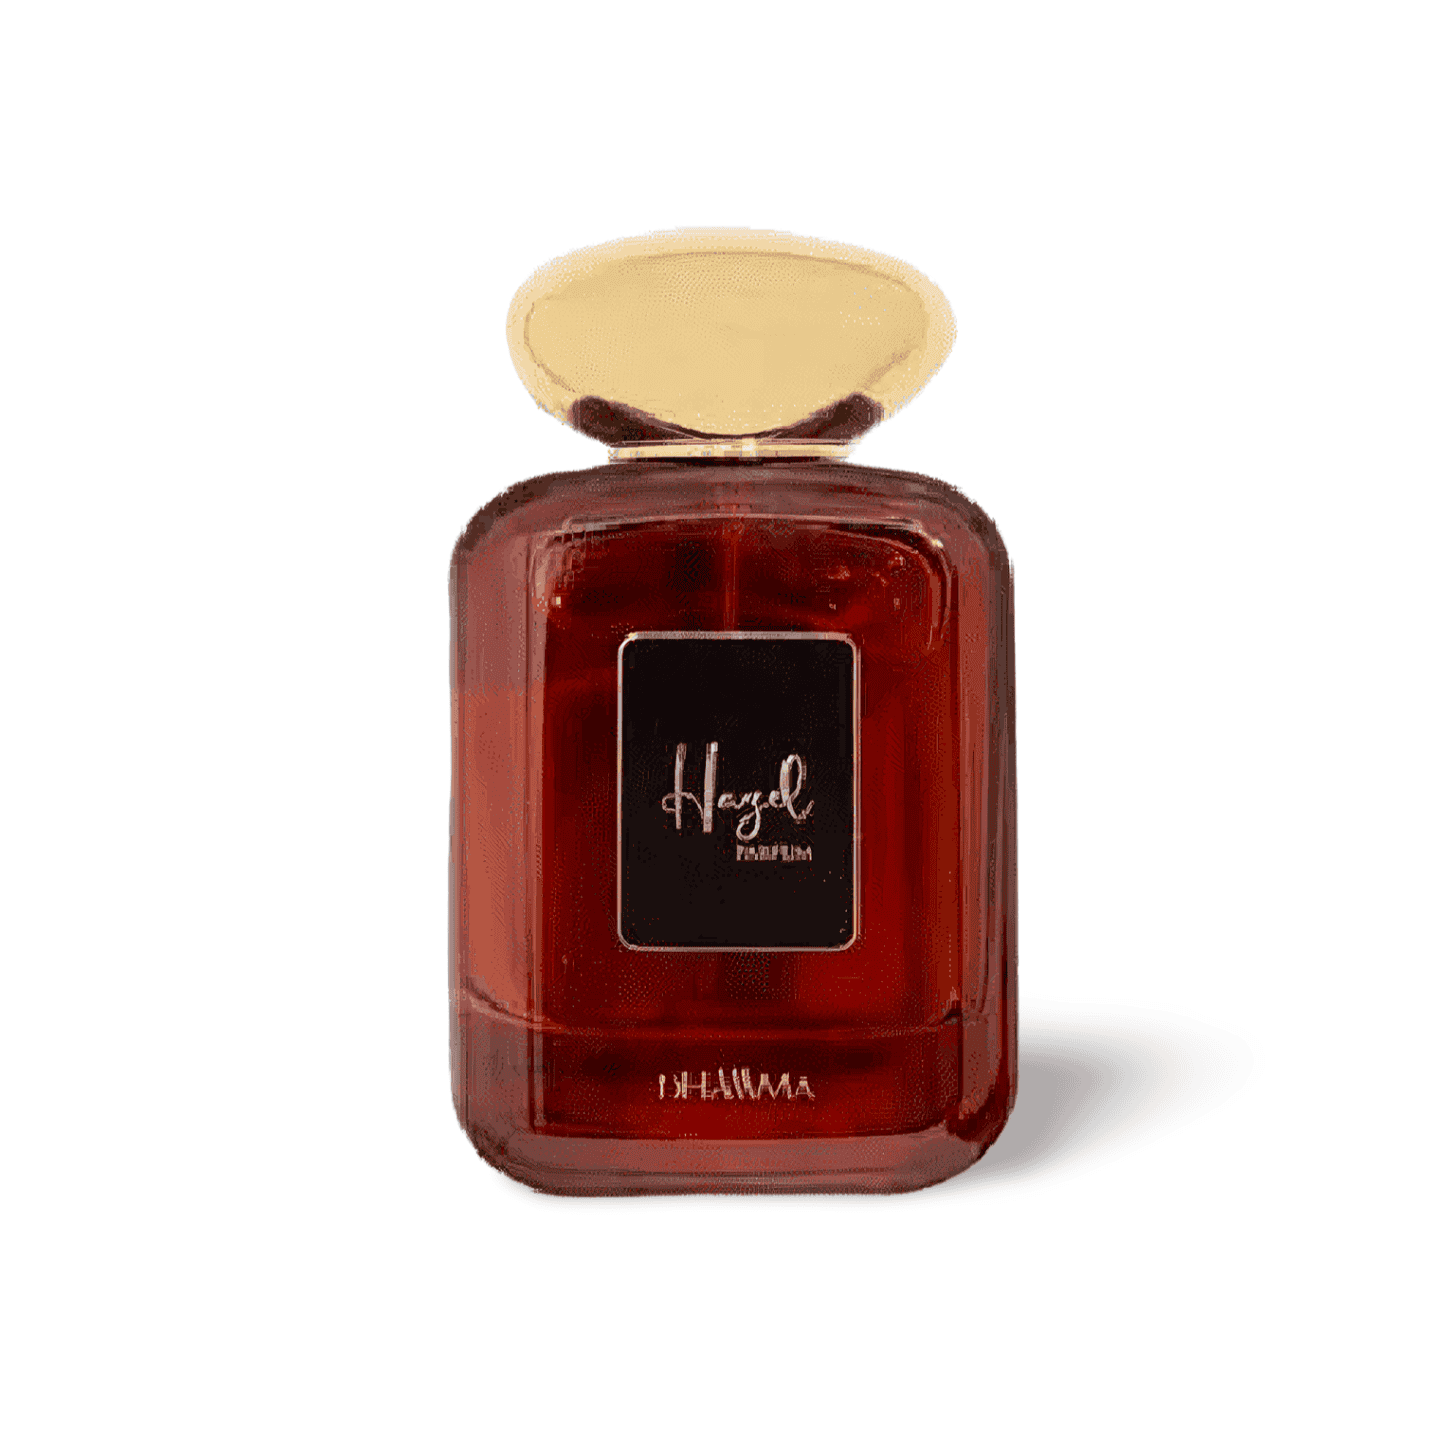 Hommes Hazel Perfume